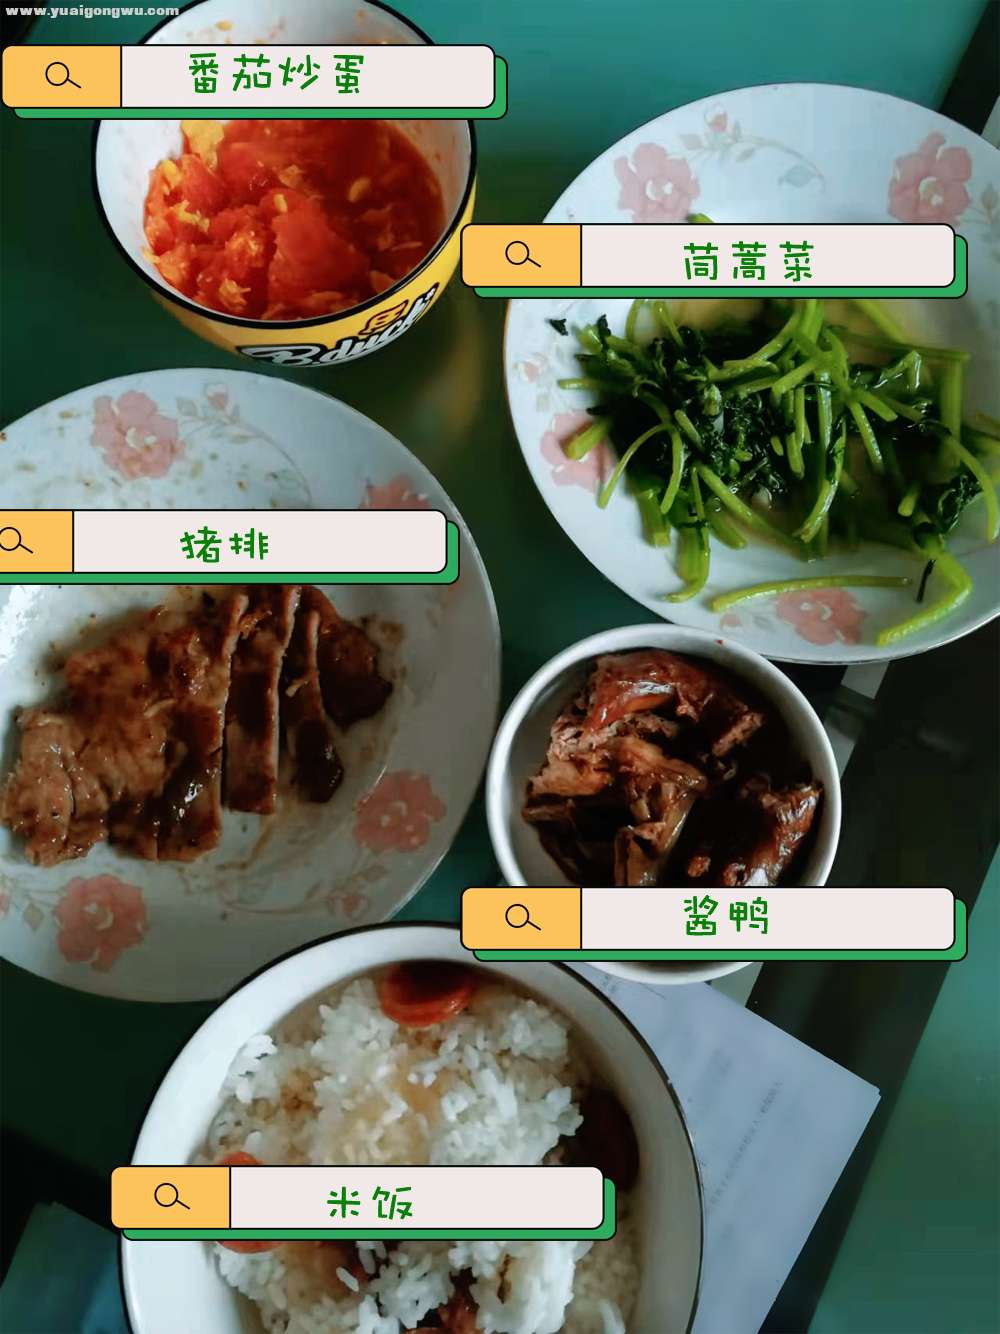 中餐：猪排、酱鸭、番茄炒蛋、茼蒿菜、米饭